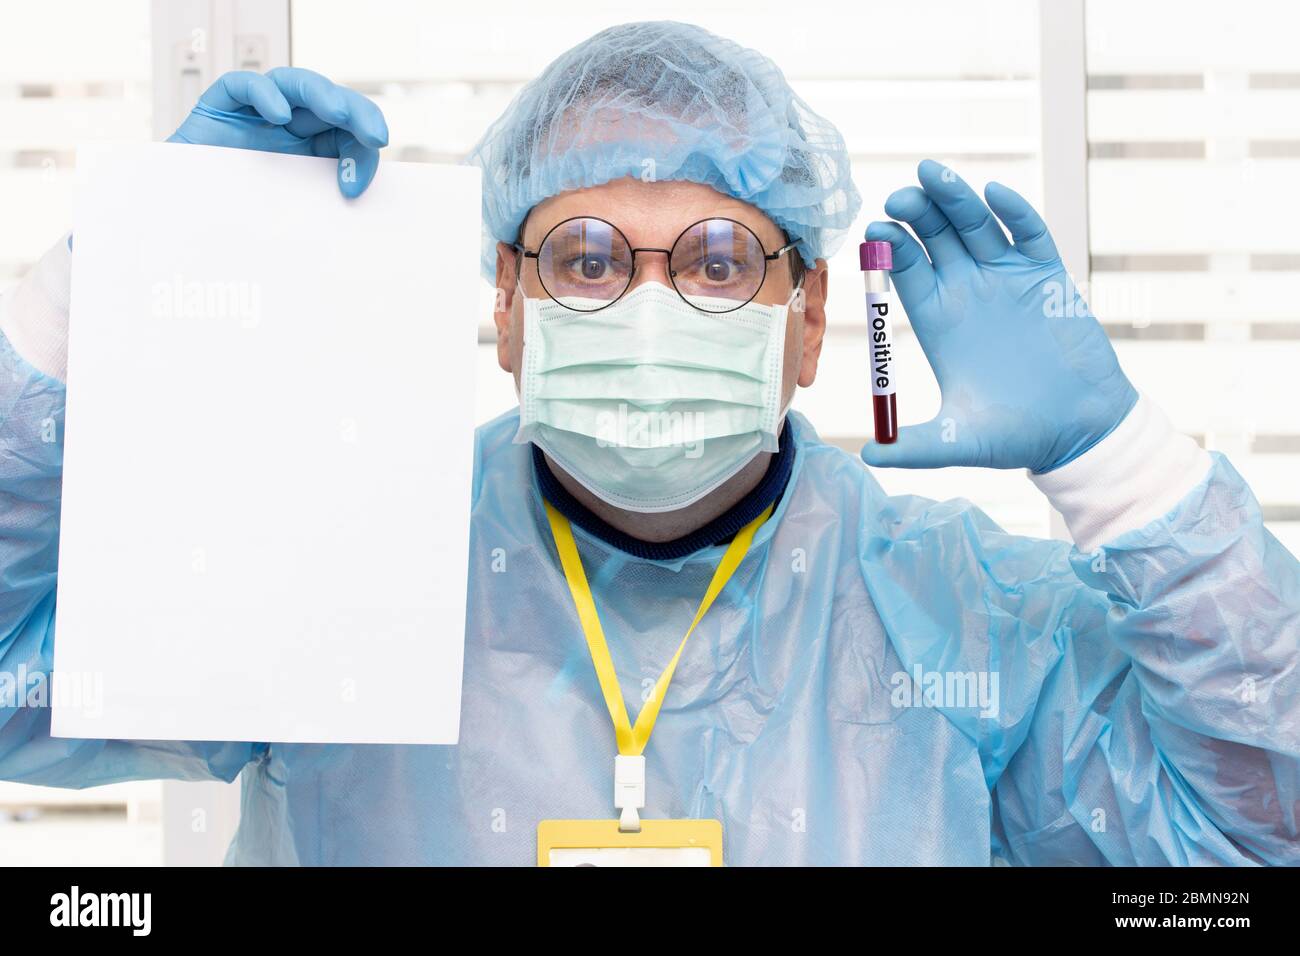 Médico en traje protector sosteniendo un papel blanco vacío y tubo con resultados positivos de análisis de sangre. El personal médico muestra un cartel en blanco con la prueba positiva o. Foto de stock